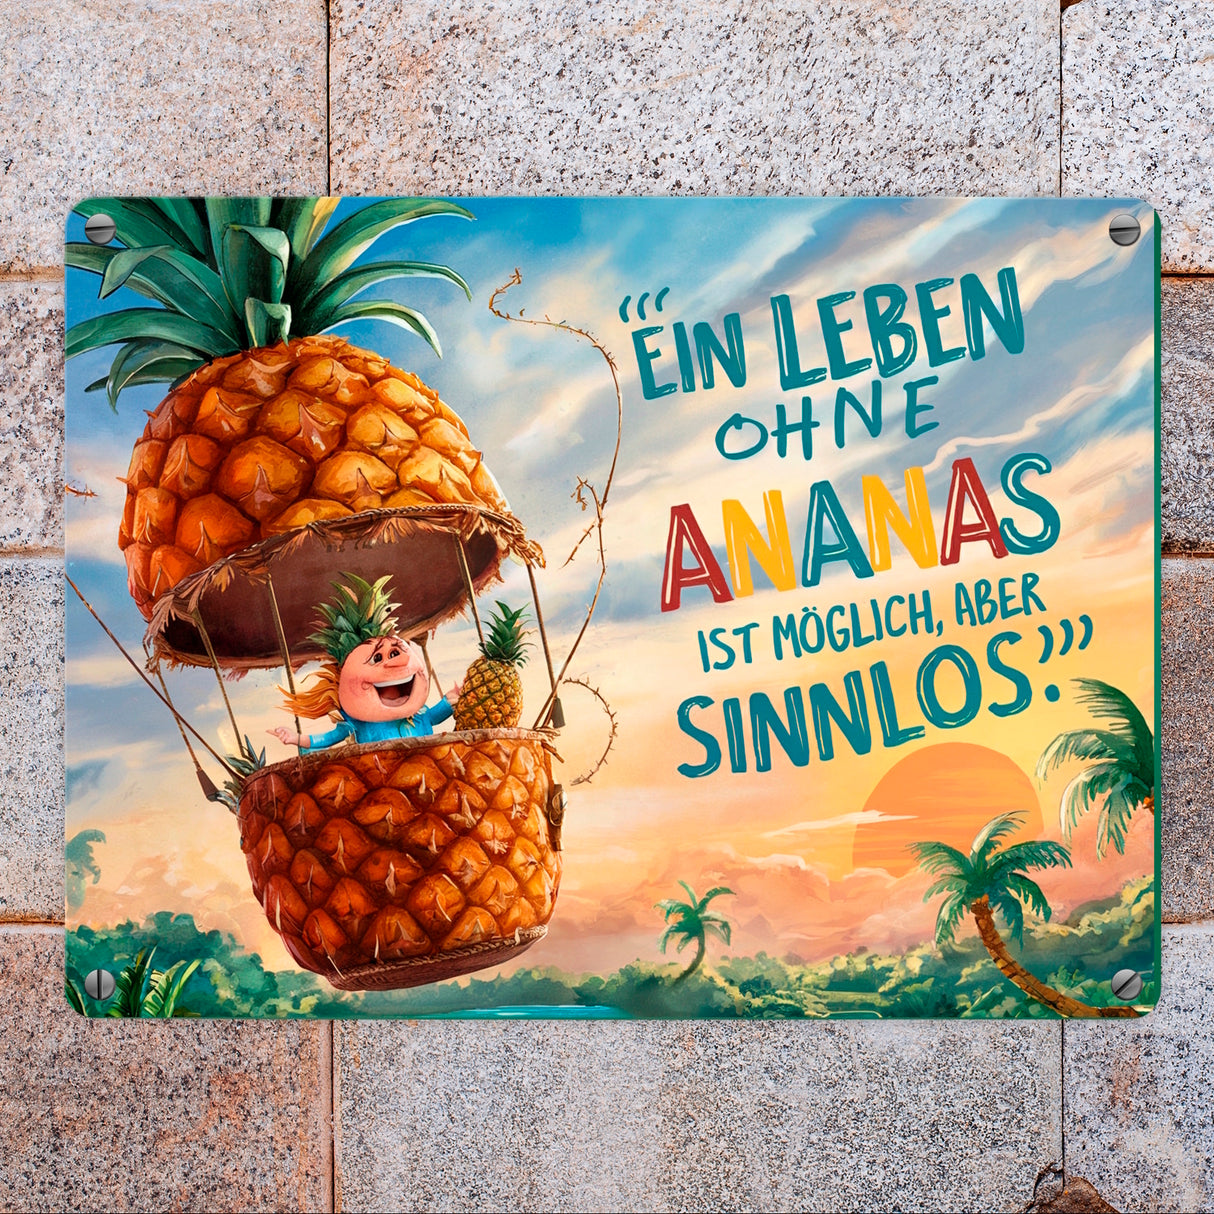 Ananas-Heißluftballon Metallschild in 15x20 cm mit Spruch Leben ohne Ananas sinnlos